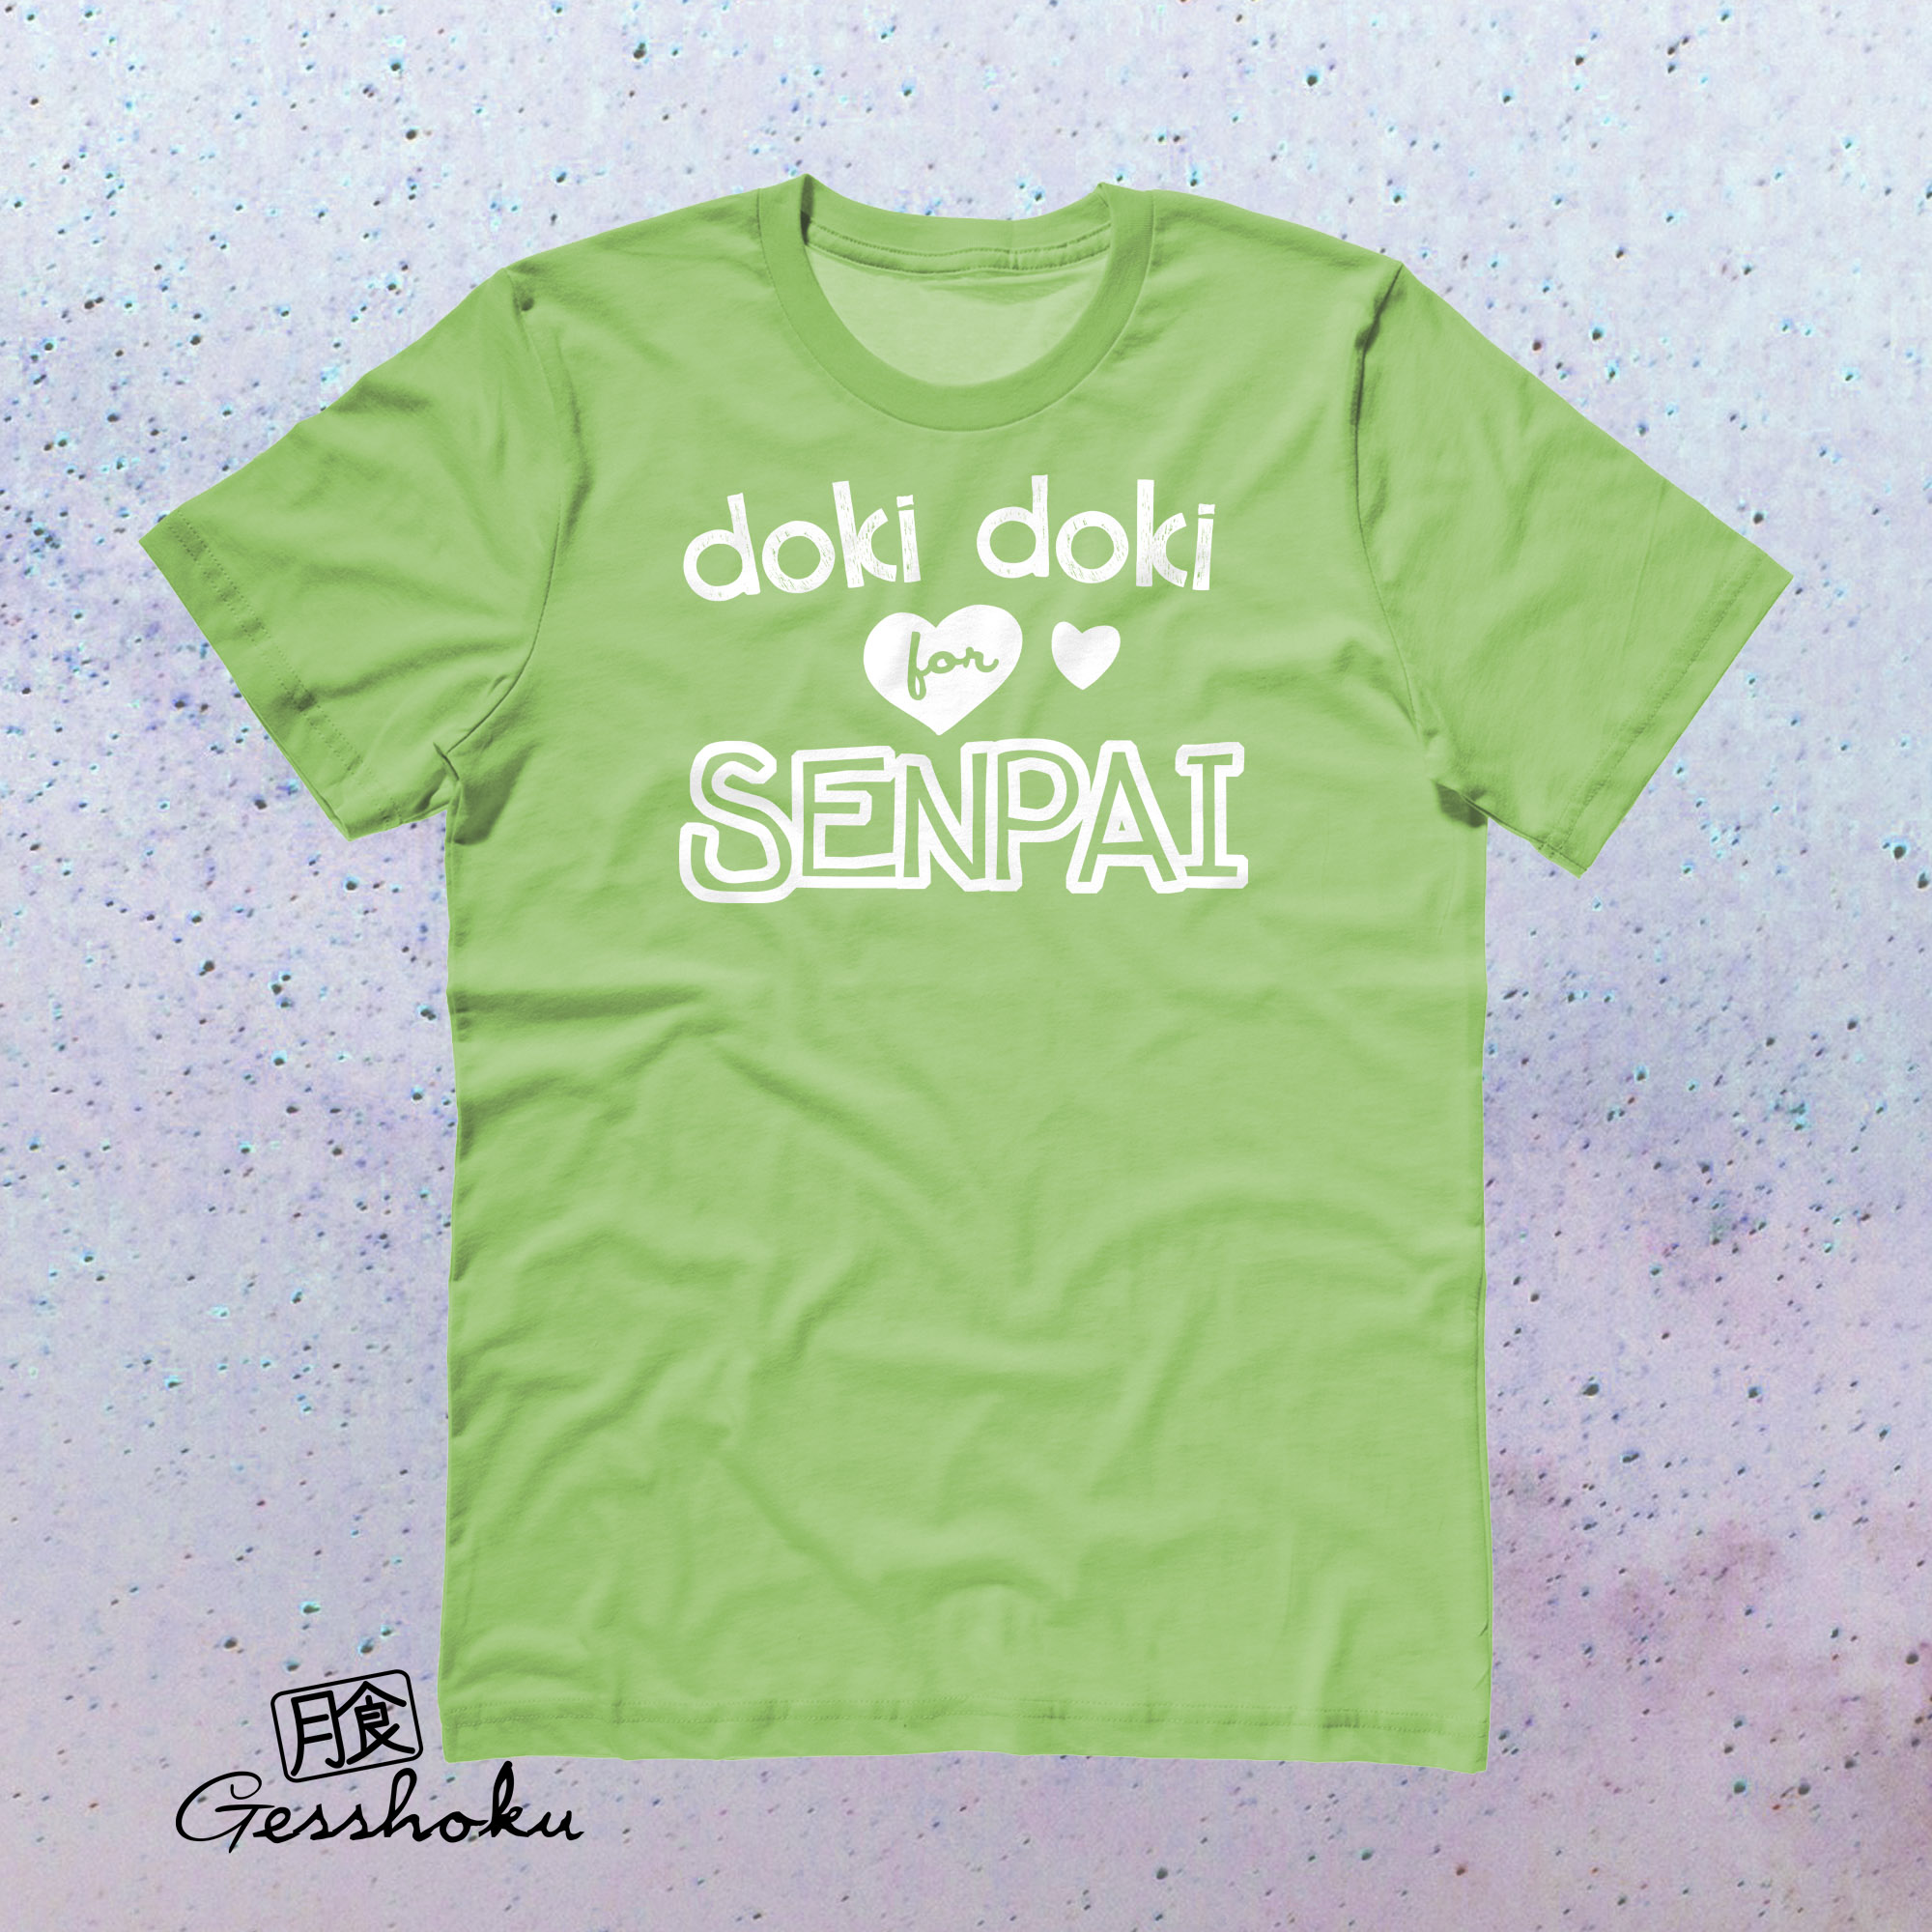 Doki Doki for Senpai T-shirt - Lime Green